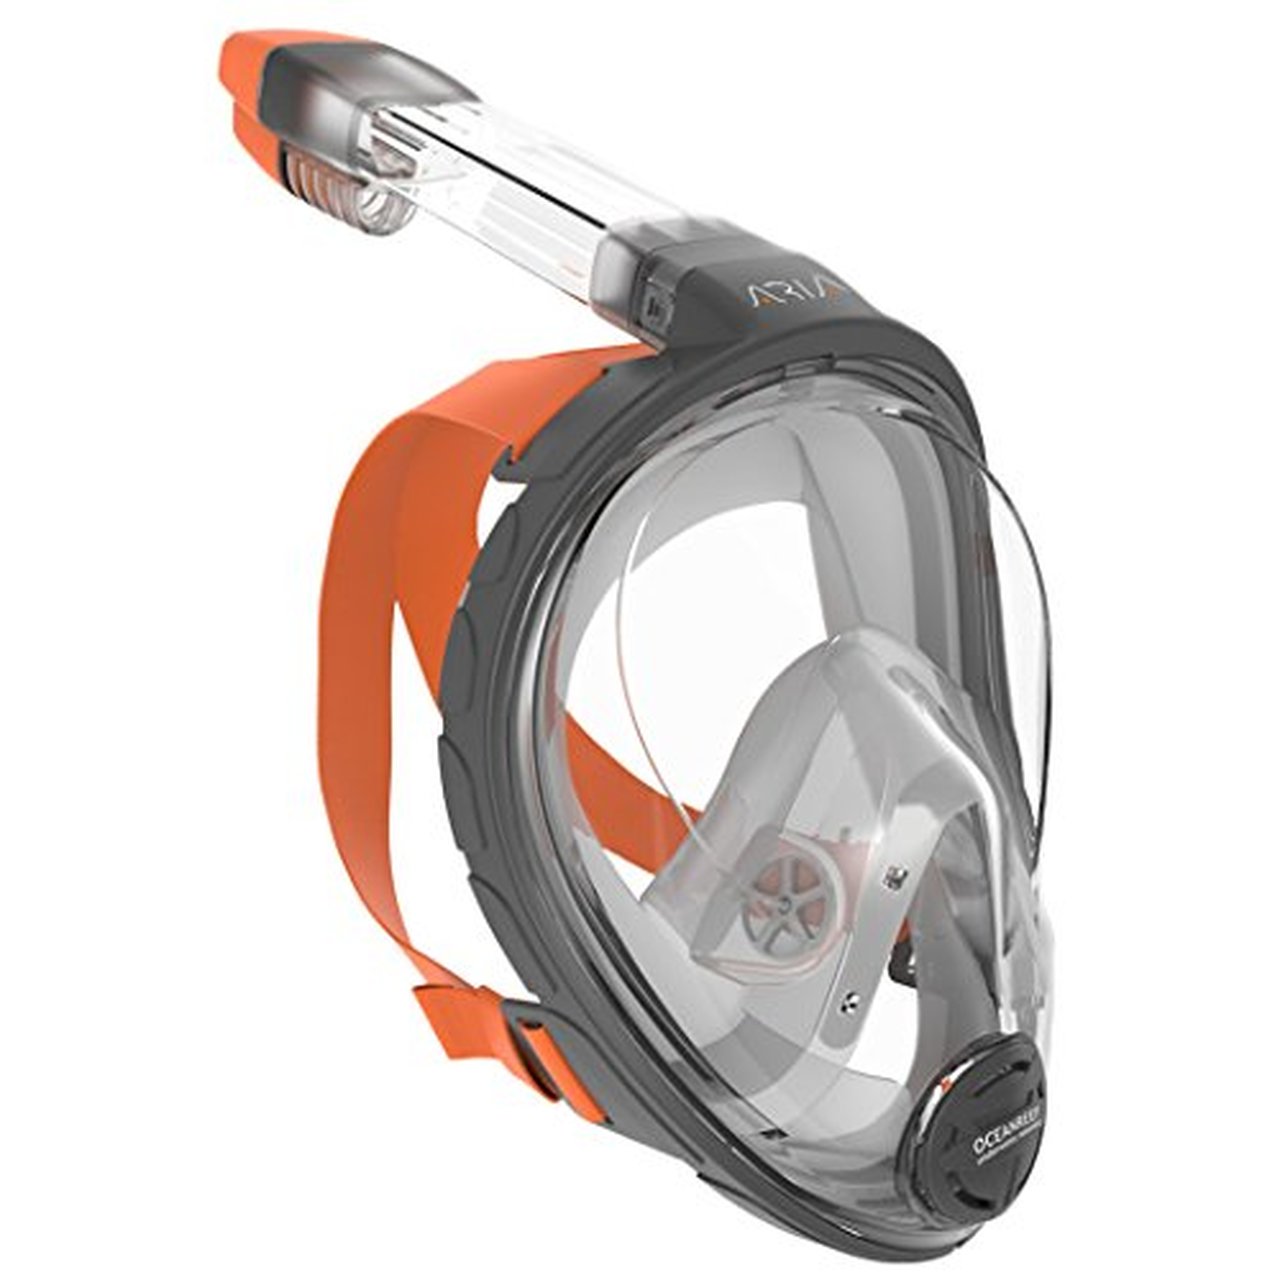 Full Face Snorkel Mask.jpg